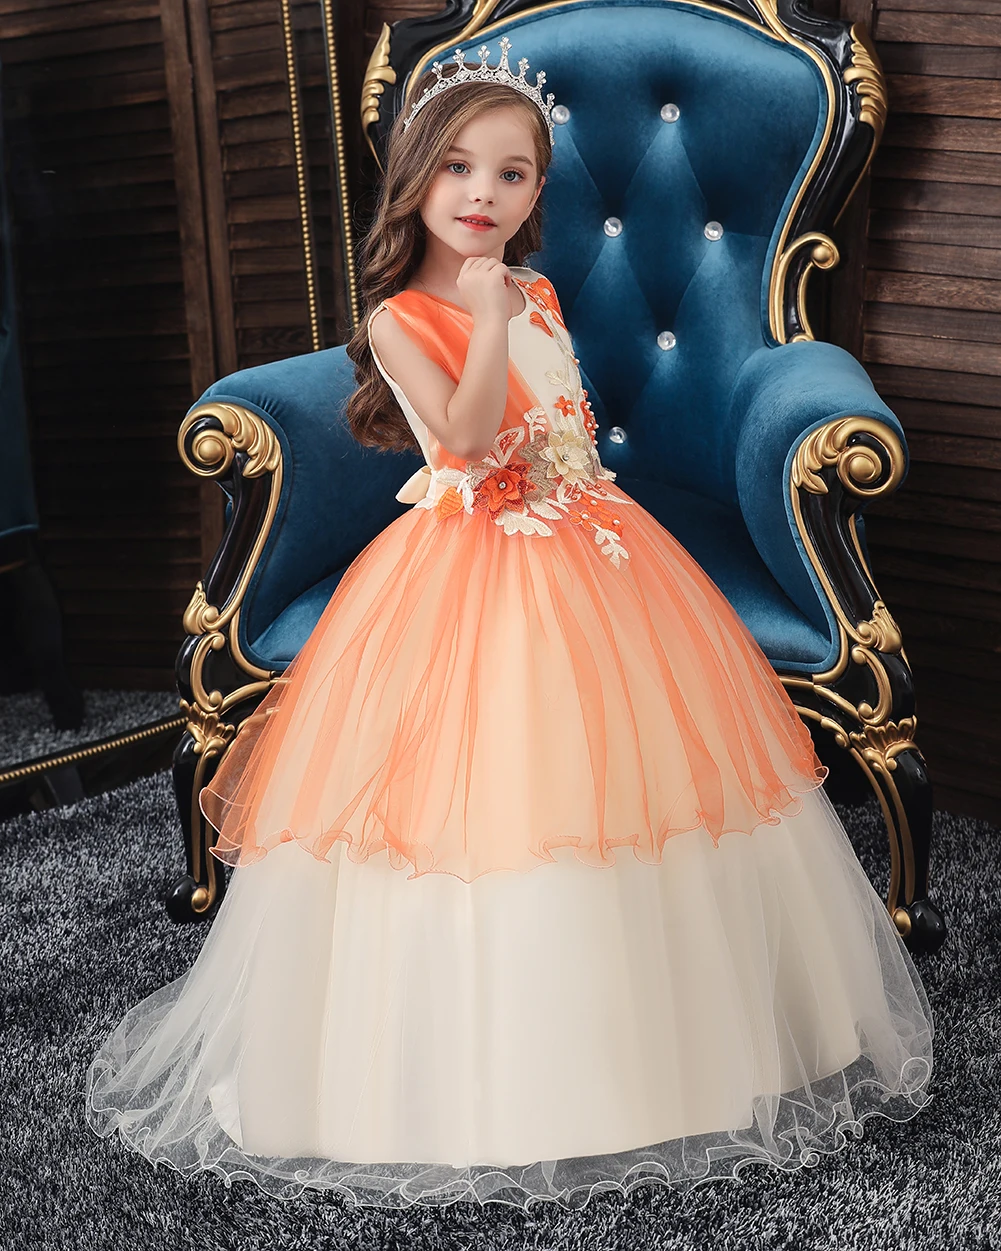 Кружевное платье принцессы; детское платье с цветочной вышивкой для девочек; винтажные Детские платья для свадебной вечеринки; торжественное бальное платье на год